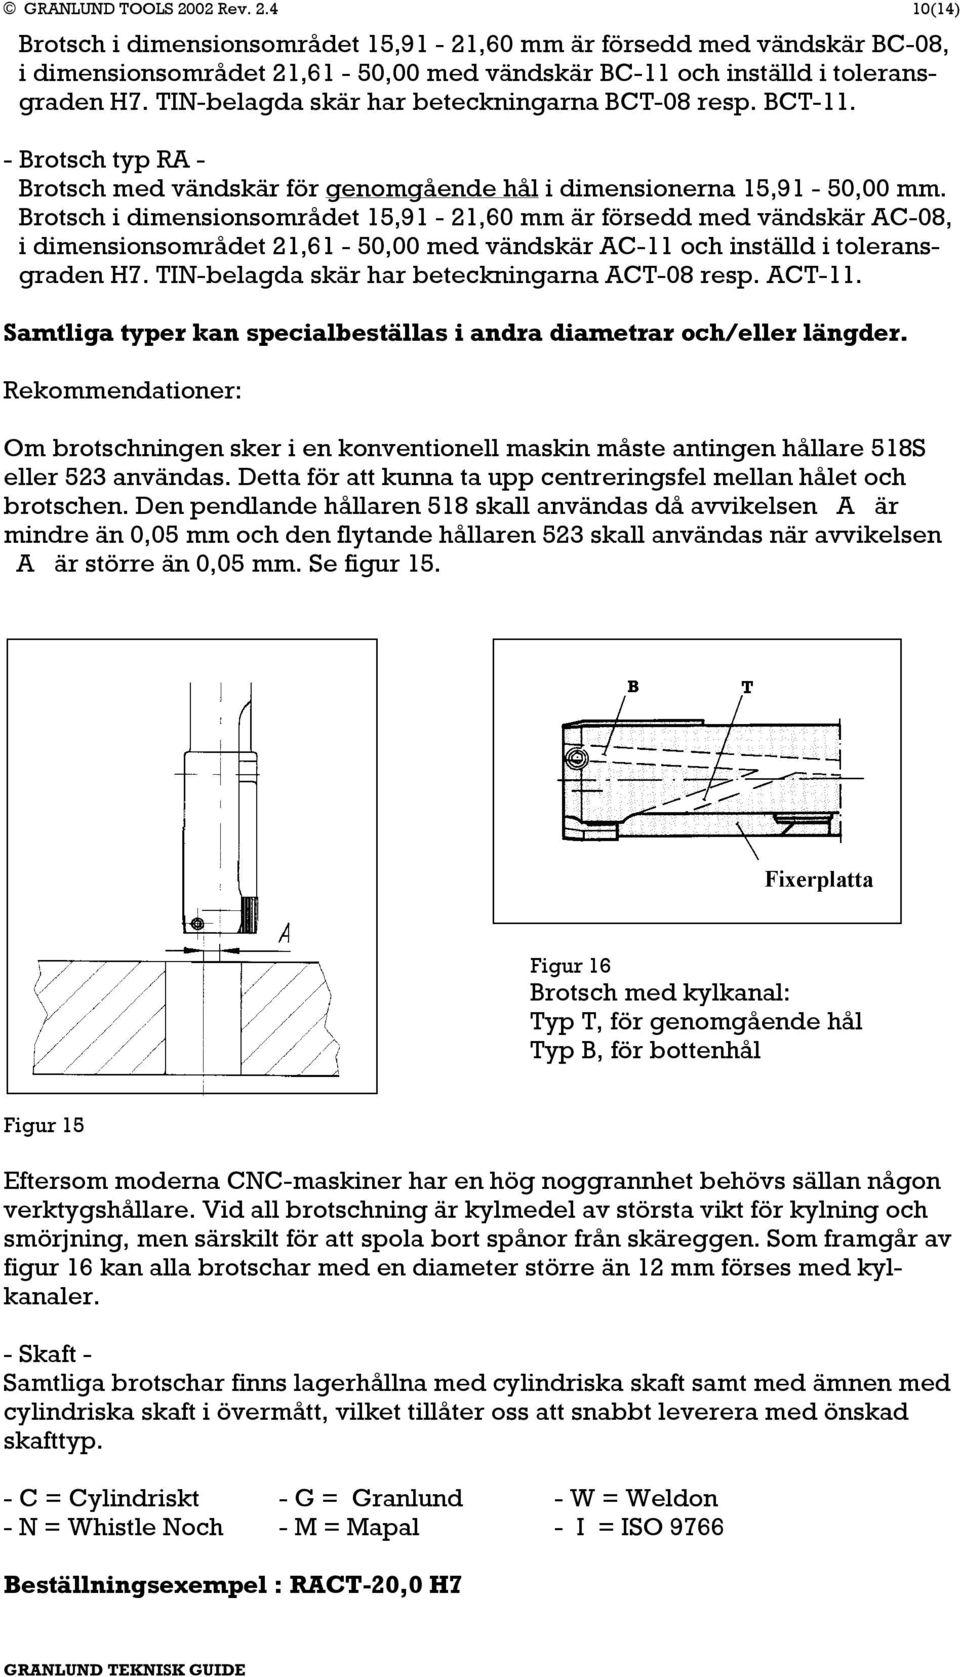 Brotsch i dimensionsområdet 15,91-21,60 mm är försedd med vändskär AC-08, i dimensionsområdet 21,61-50,00 med vändskär AC-11 och inställd i toleransgraden H7.